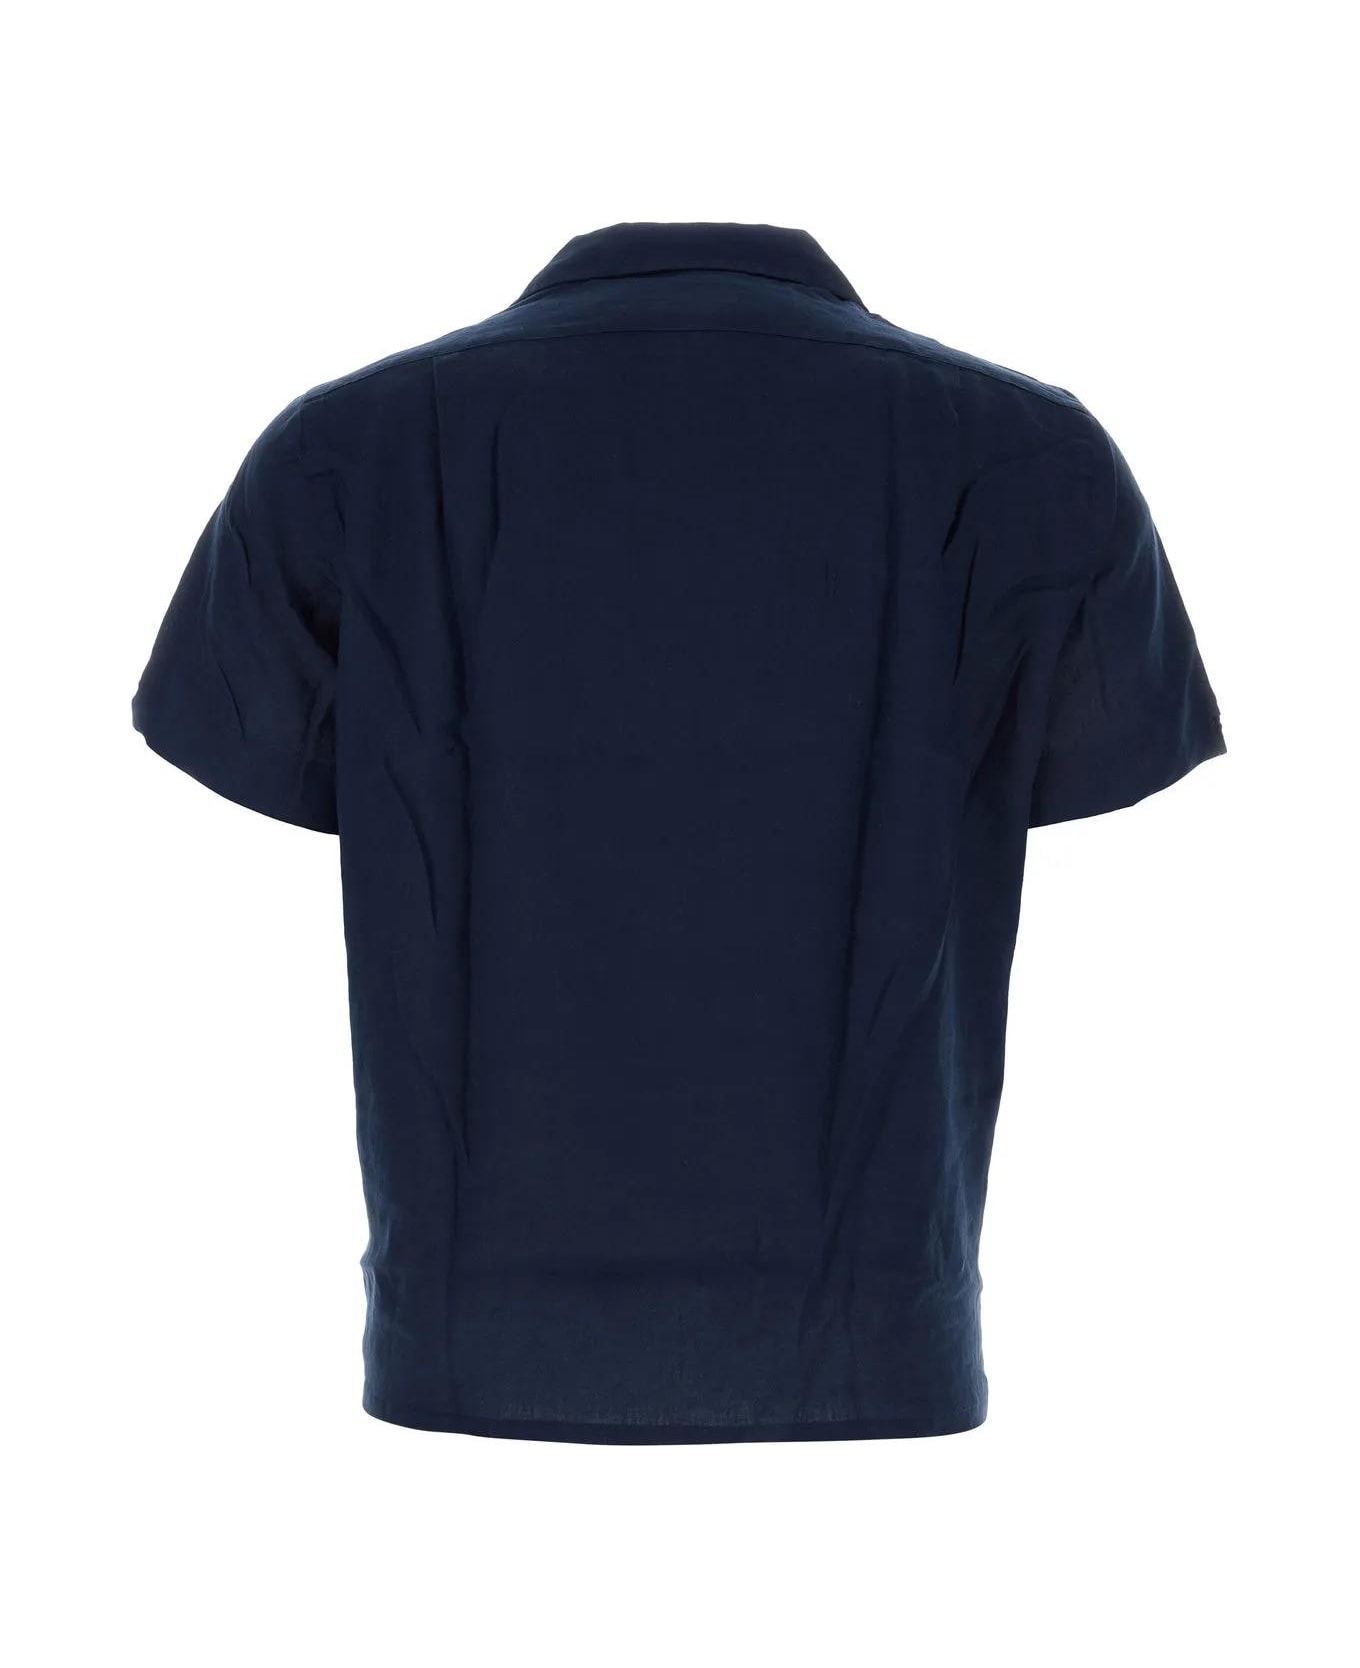 Ralph Lauren Navy Blue Linen Shirt - BLUE